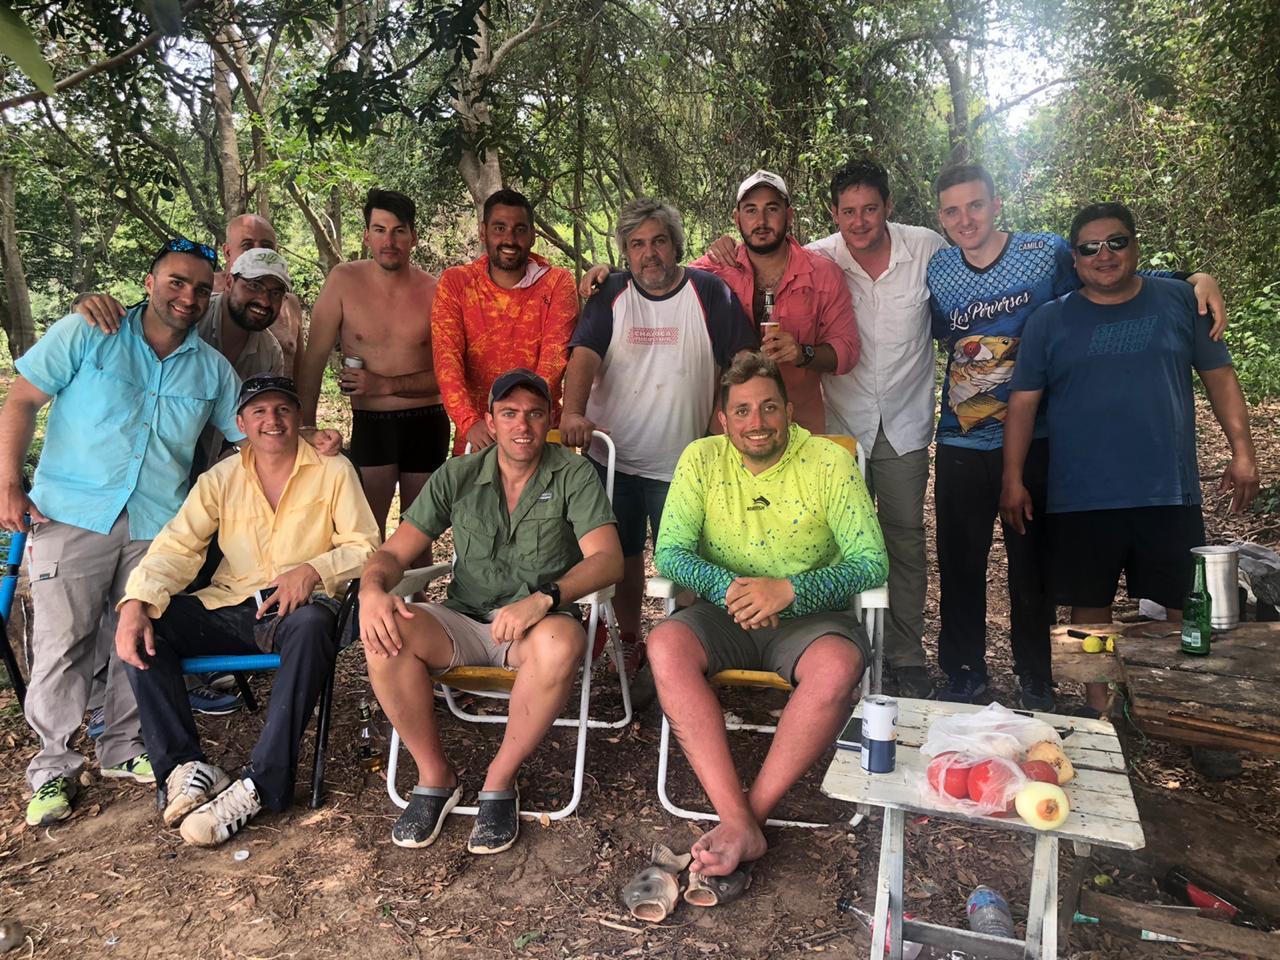  RECUERDO. Uno de los grupos de tucumanos que se reunieron para almorzar en una isla.